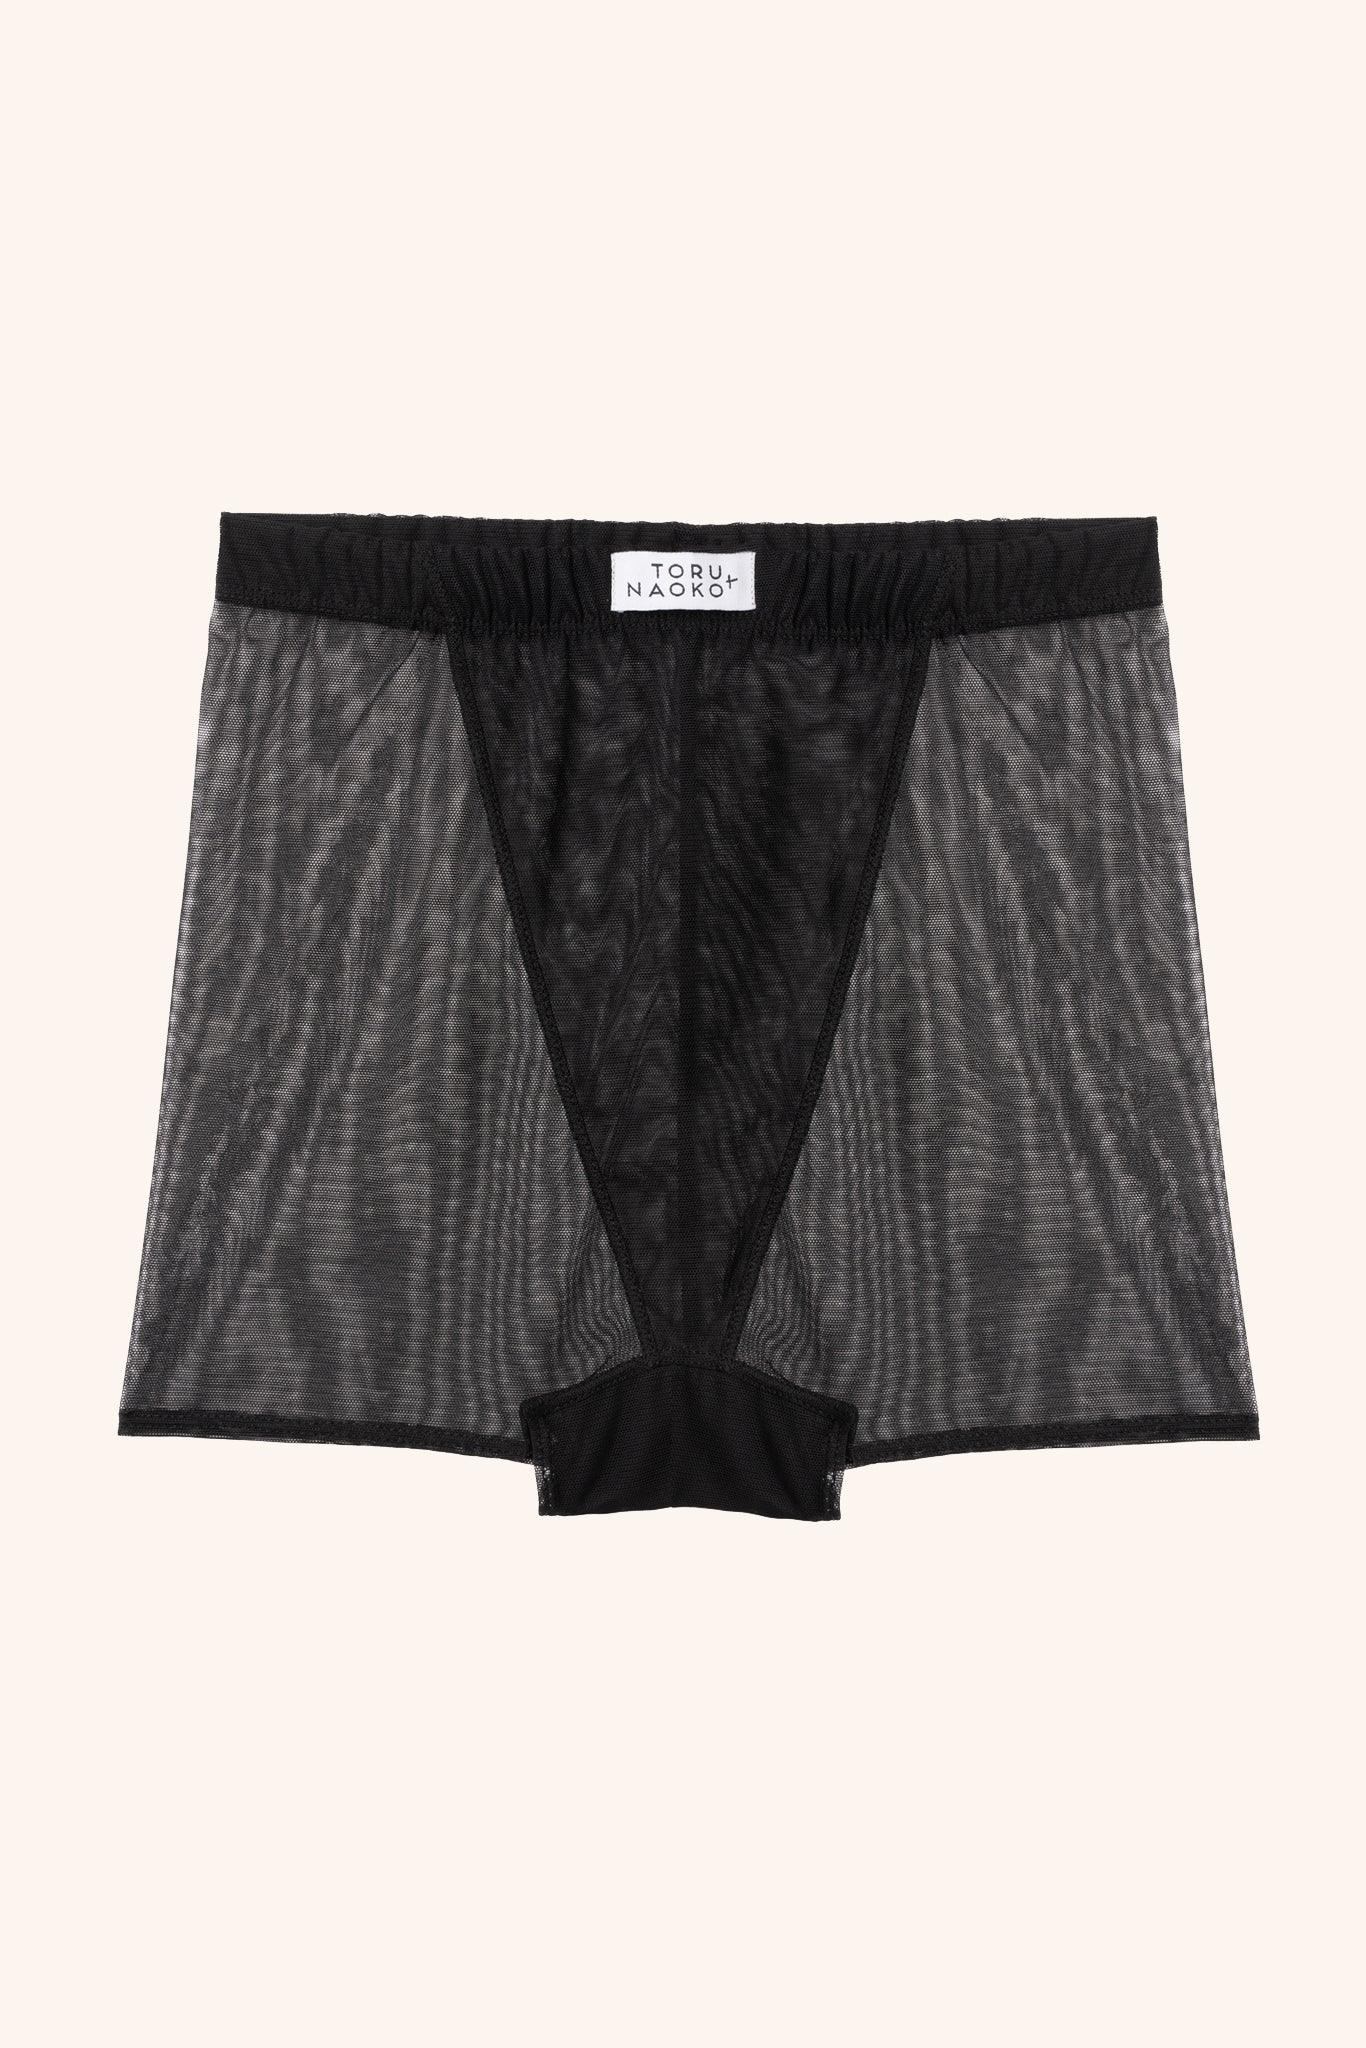 Nico boxer shorts - mesh – Toru & Naoko